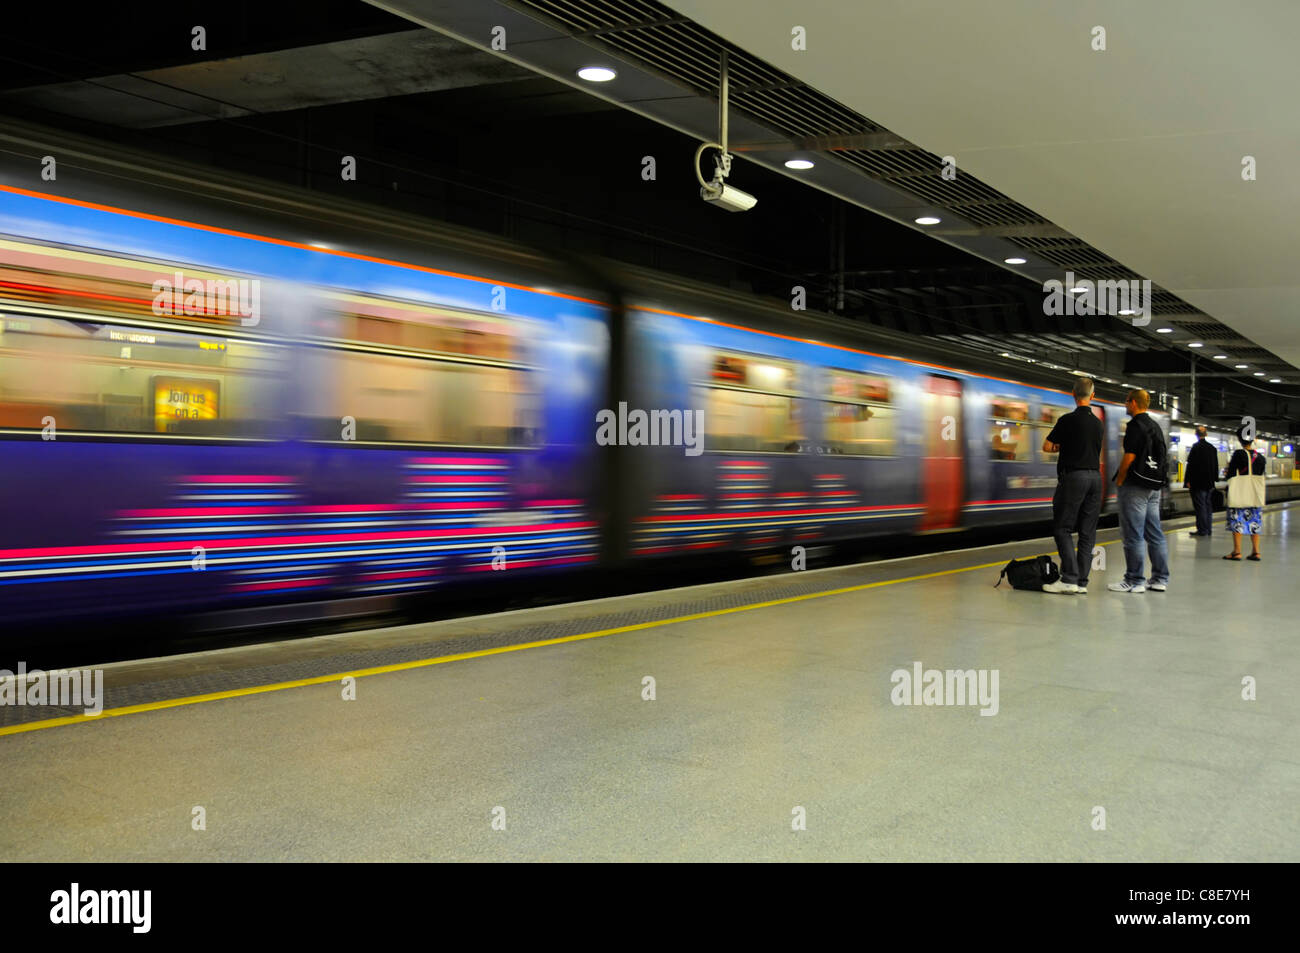 Movimiento borroso del tren en movimiento y pasajeros estáticos en el andén de la estación de tren internacional de St Pancras para los servicios de Thameslink en Londres, Inglaterra, Reino Unido Foto de stock